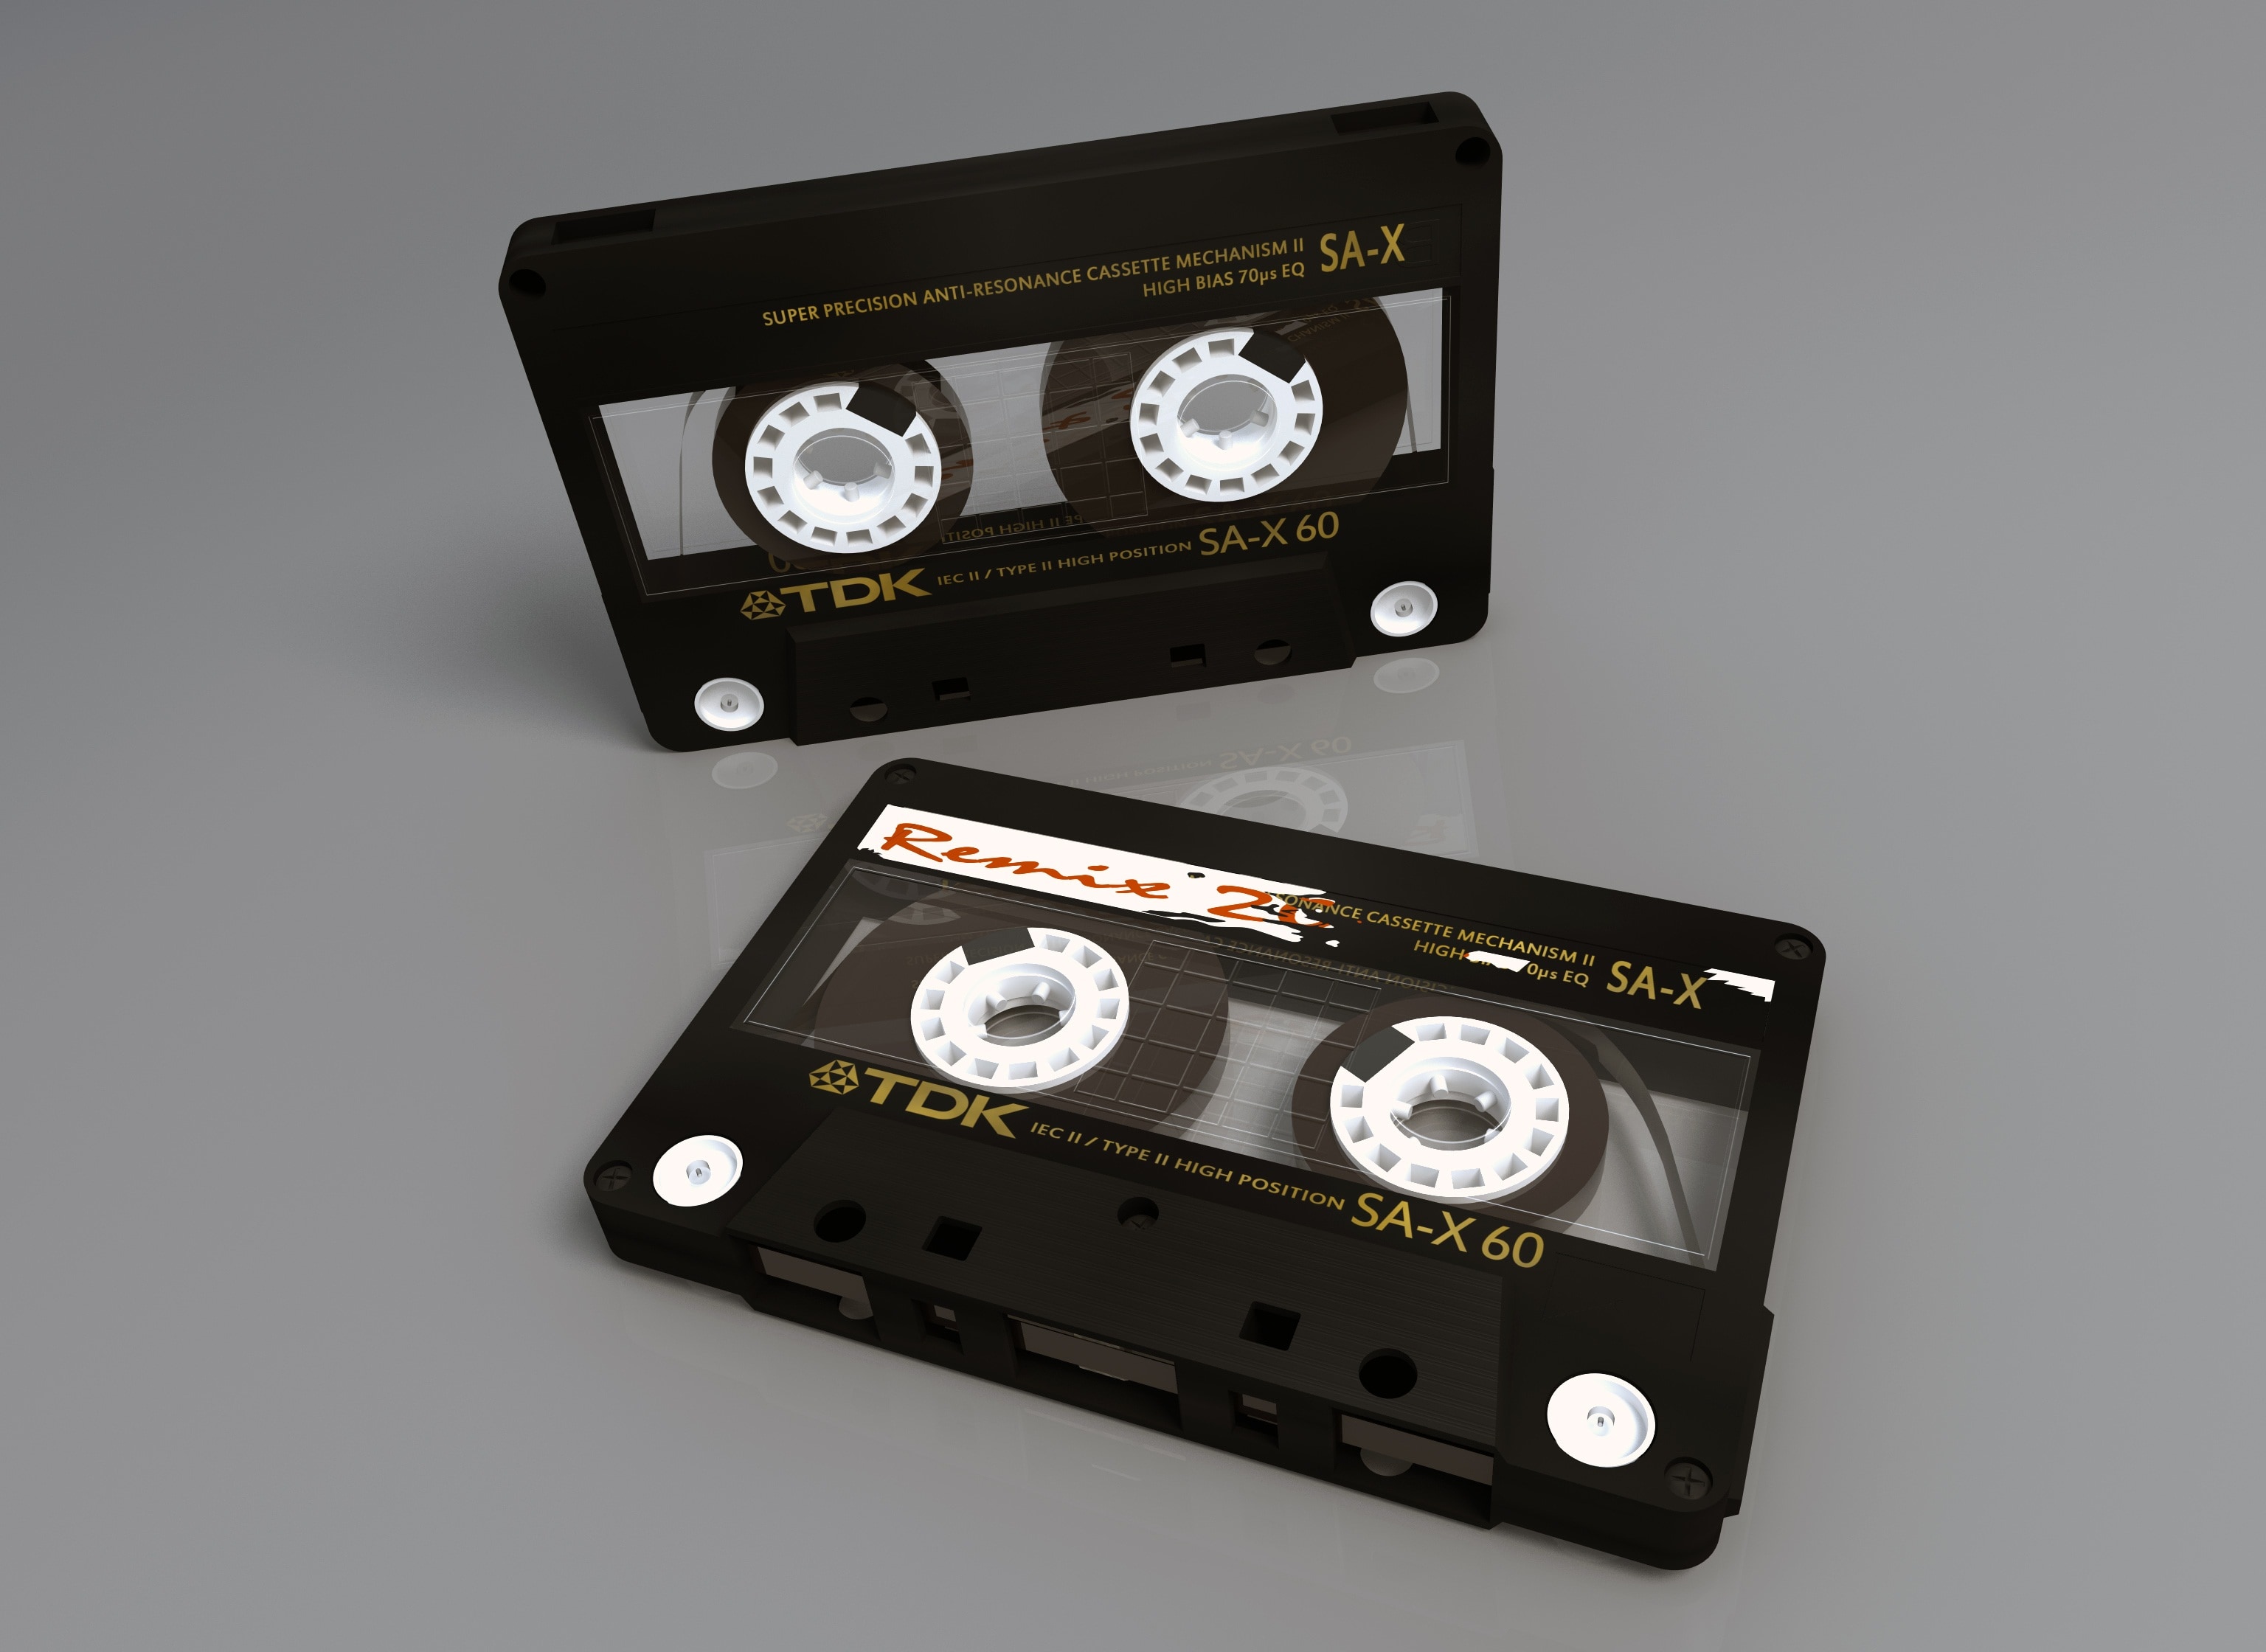 2 tdk cassette tapes